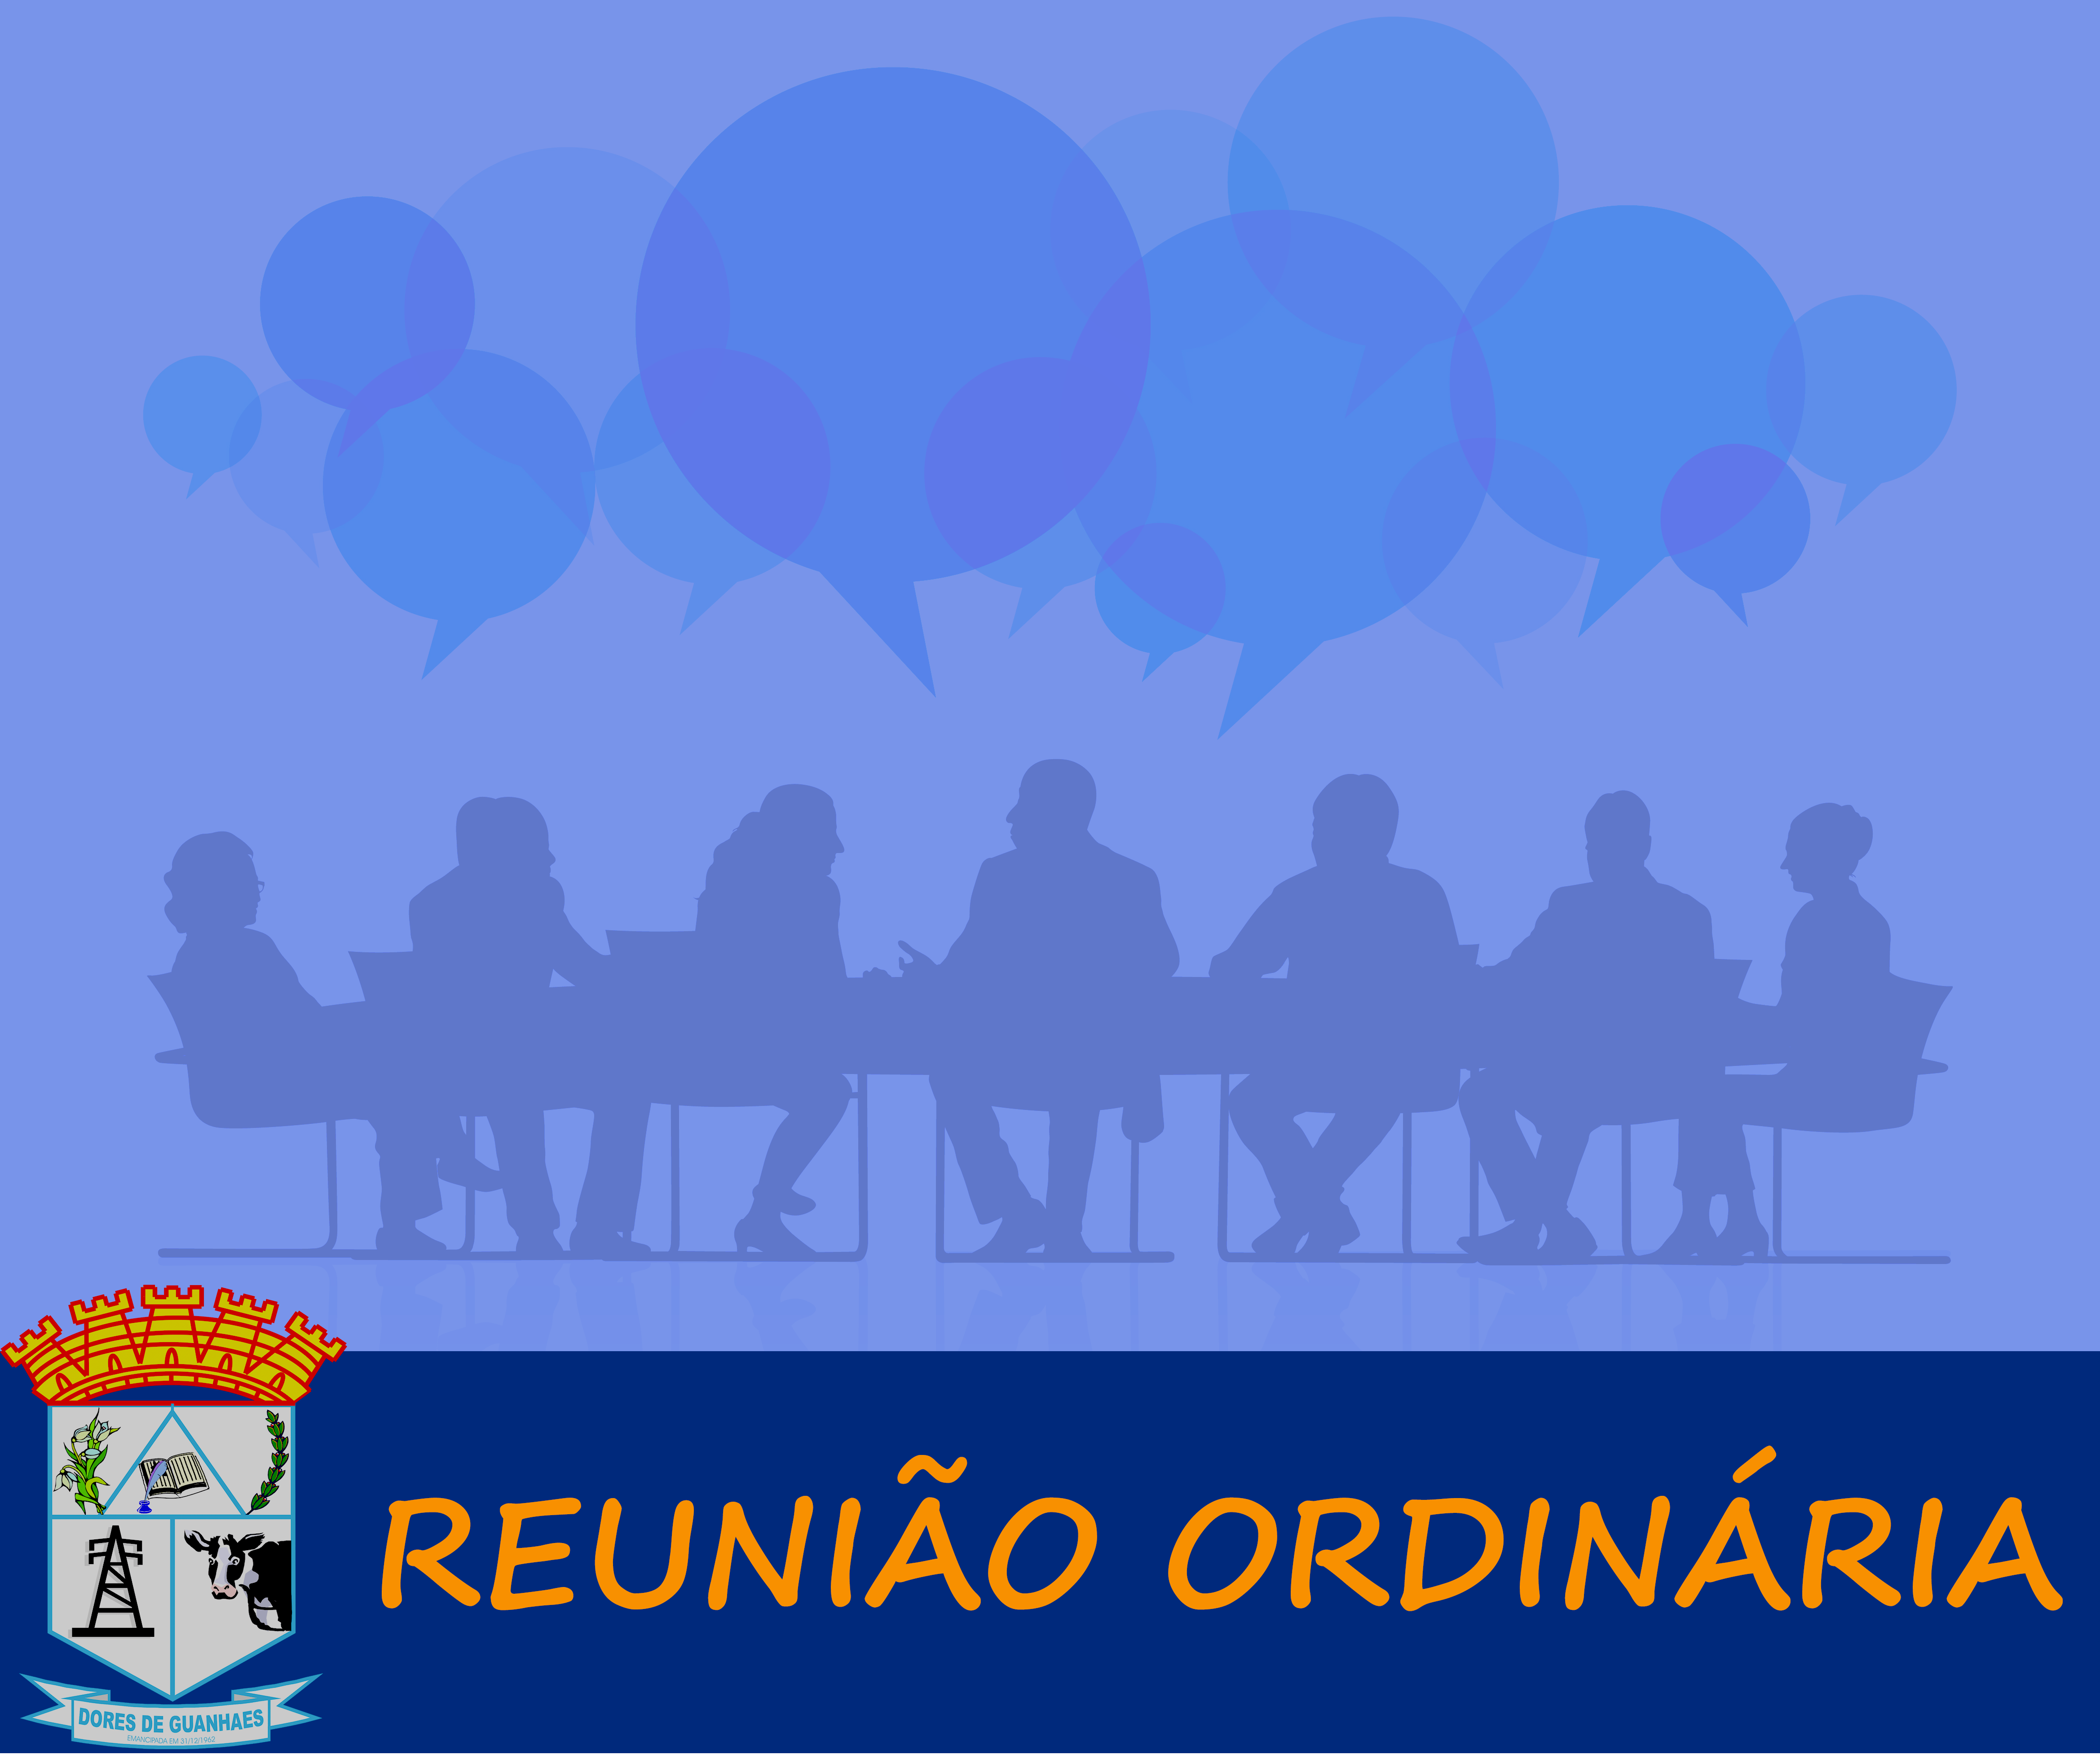 You are currently viewing Reunião Ordinária Nº 02 de 15 de Março 2021